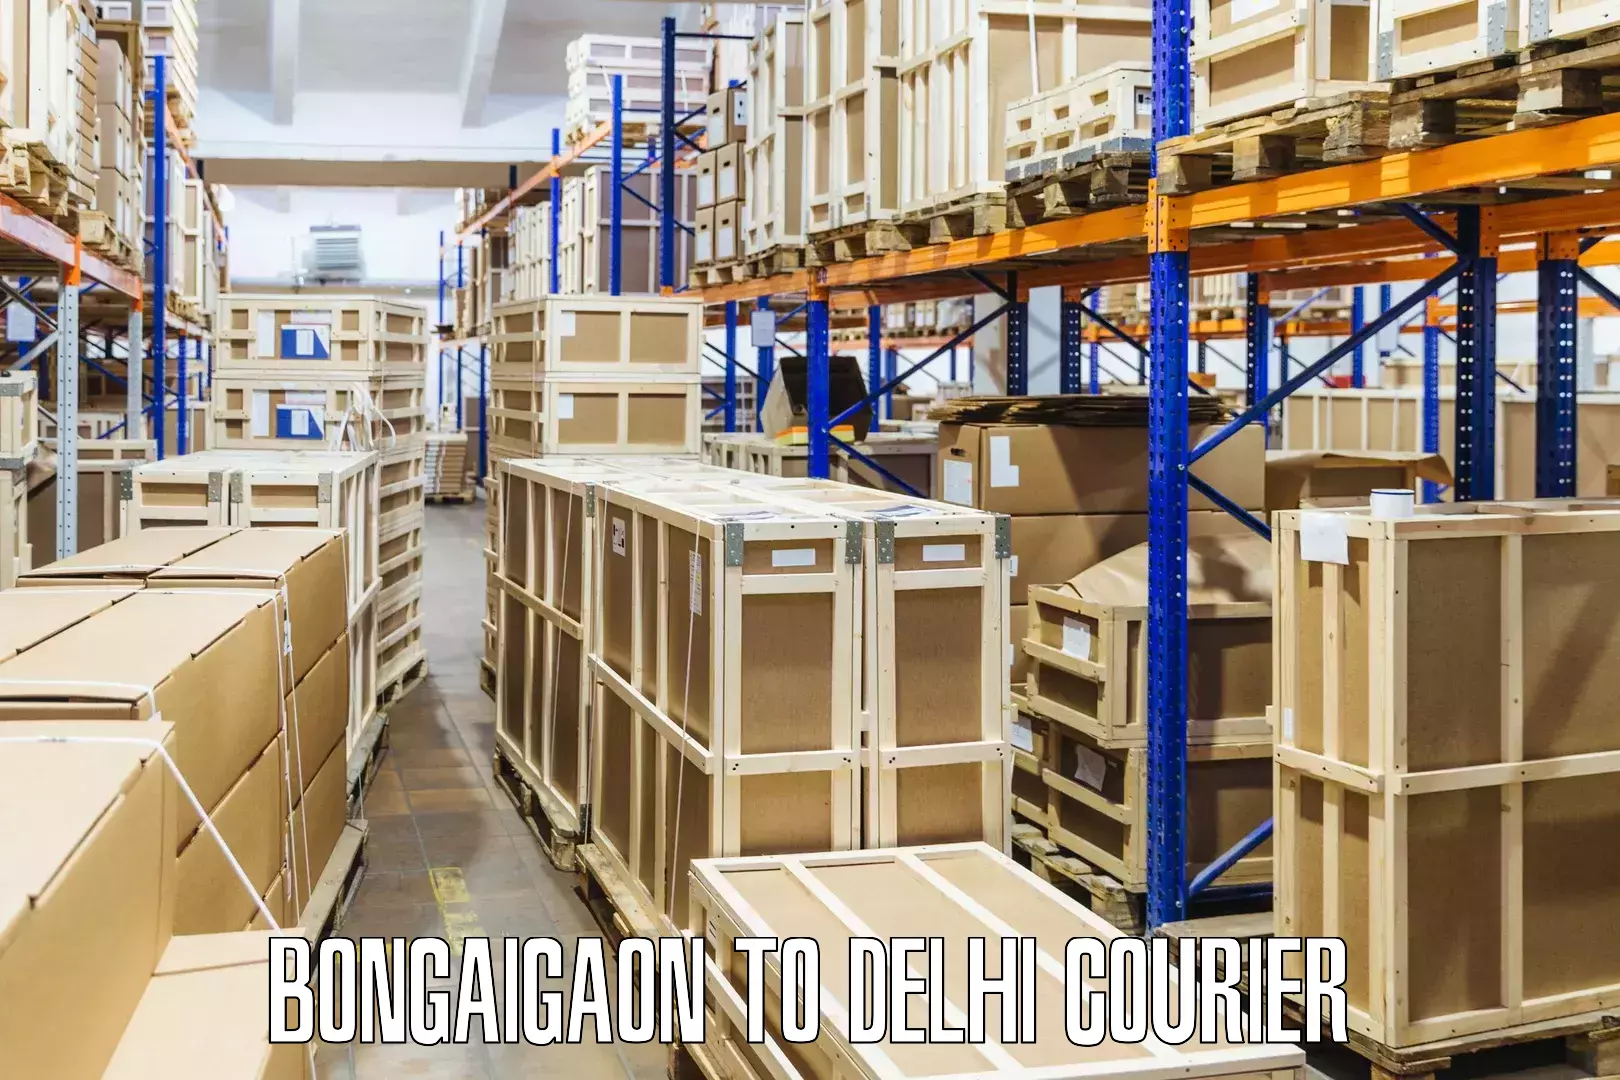 Door-to-door shipment Bongaigaon to Sarojini Nagar